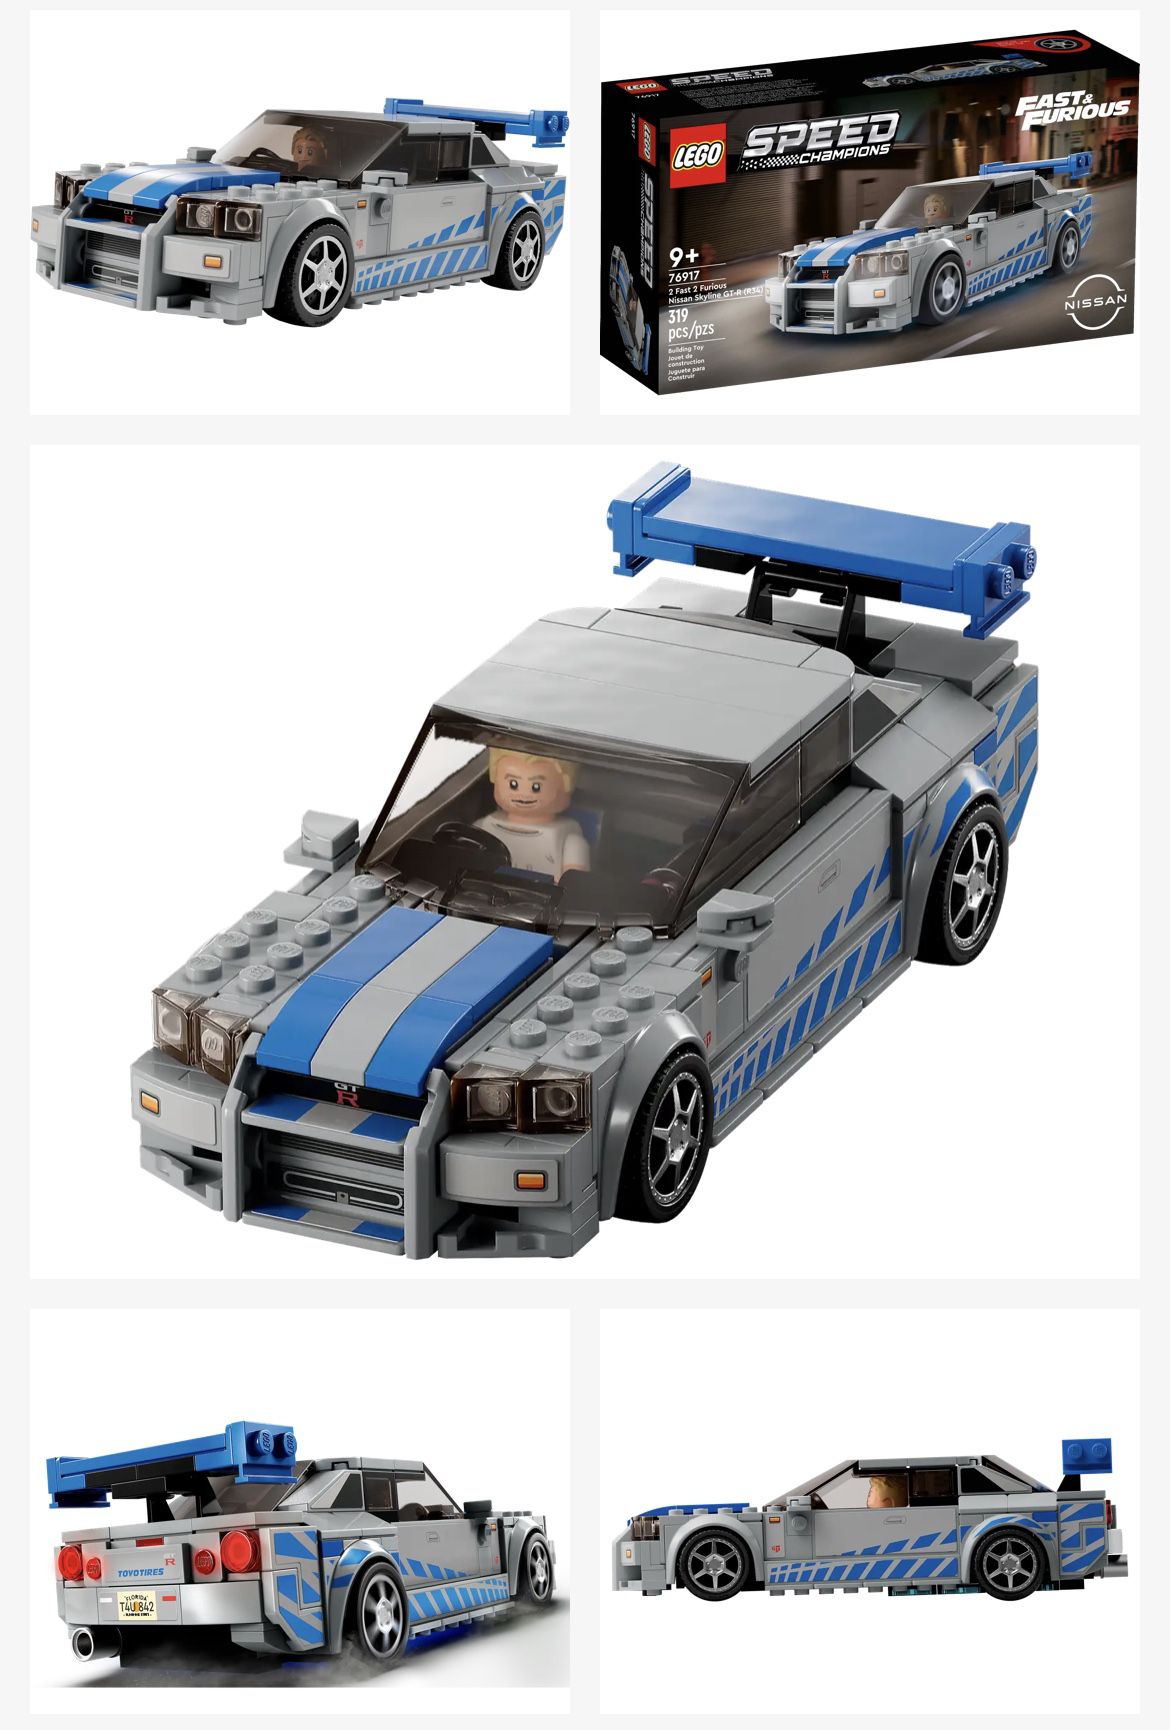 2 Fast 2 Furious Lego Nissan Skyline GT-R (R34)